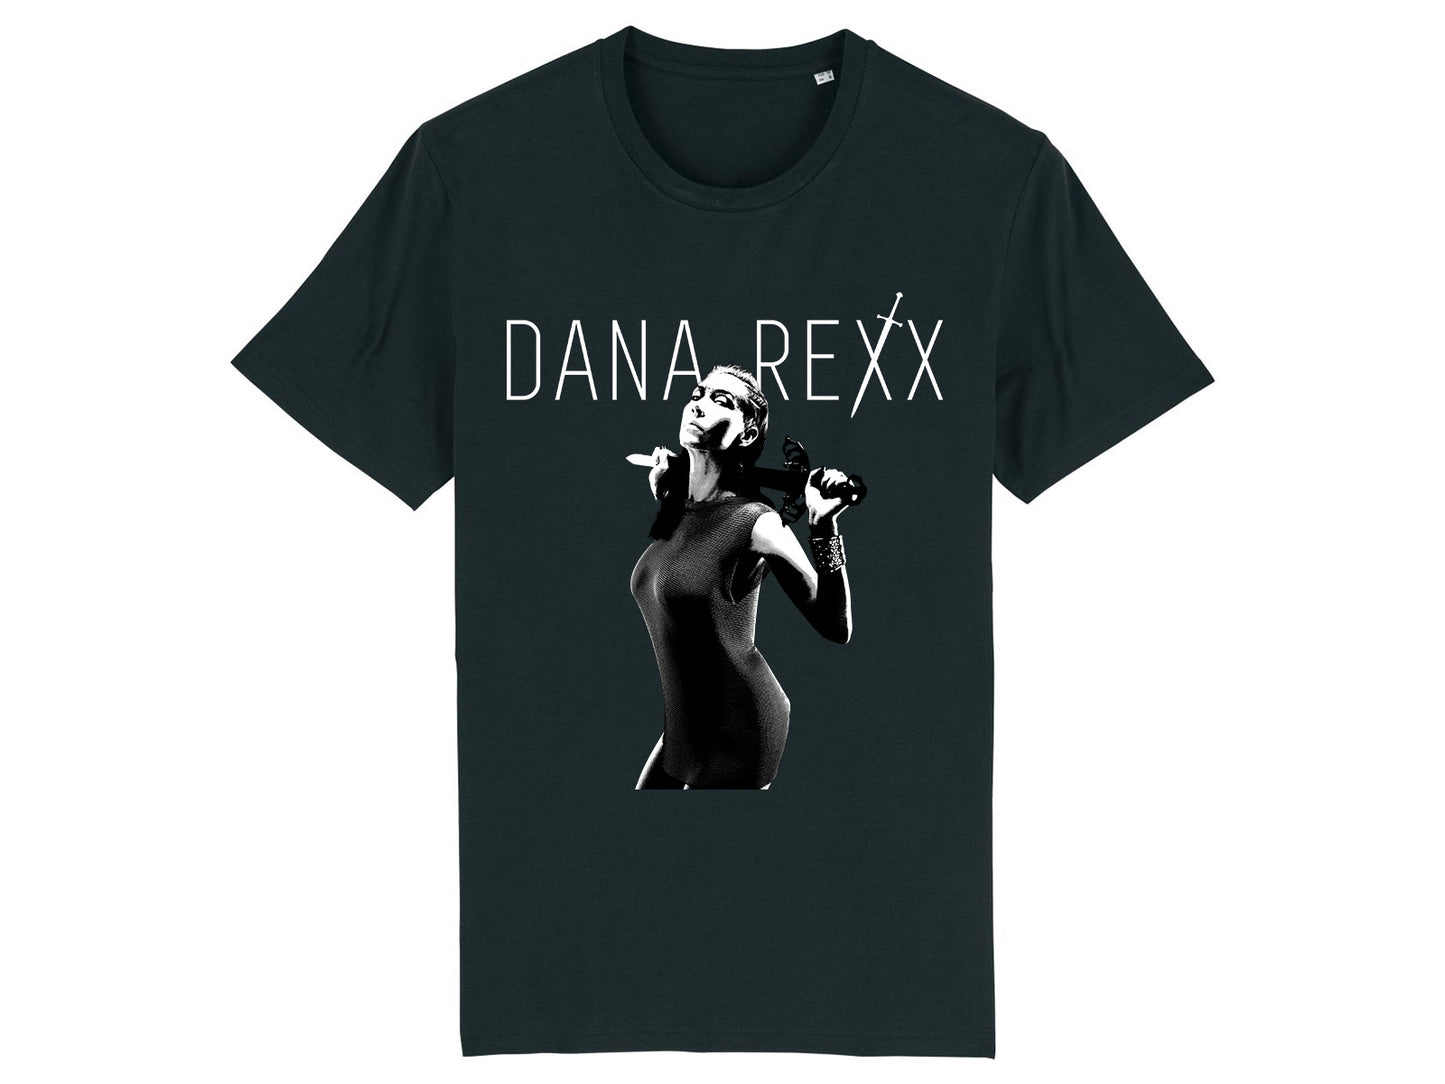 'Dana Rexx' T-shirt